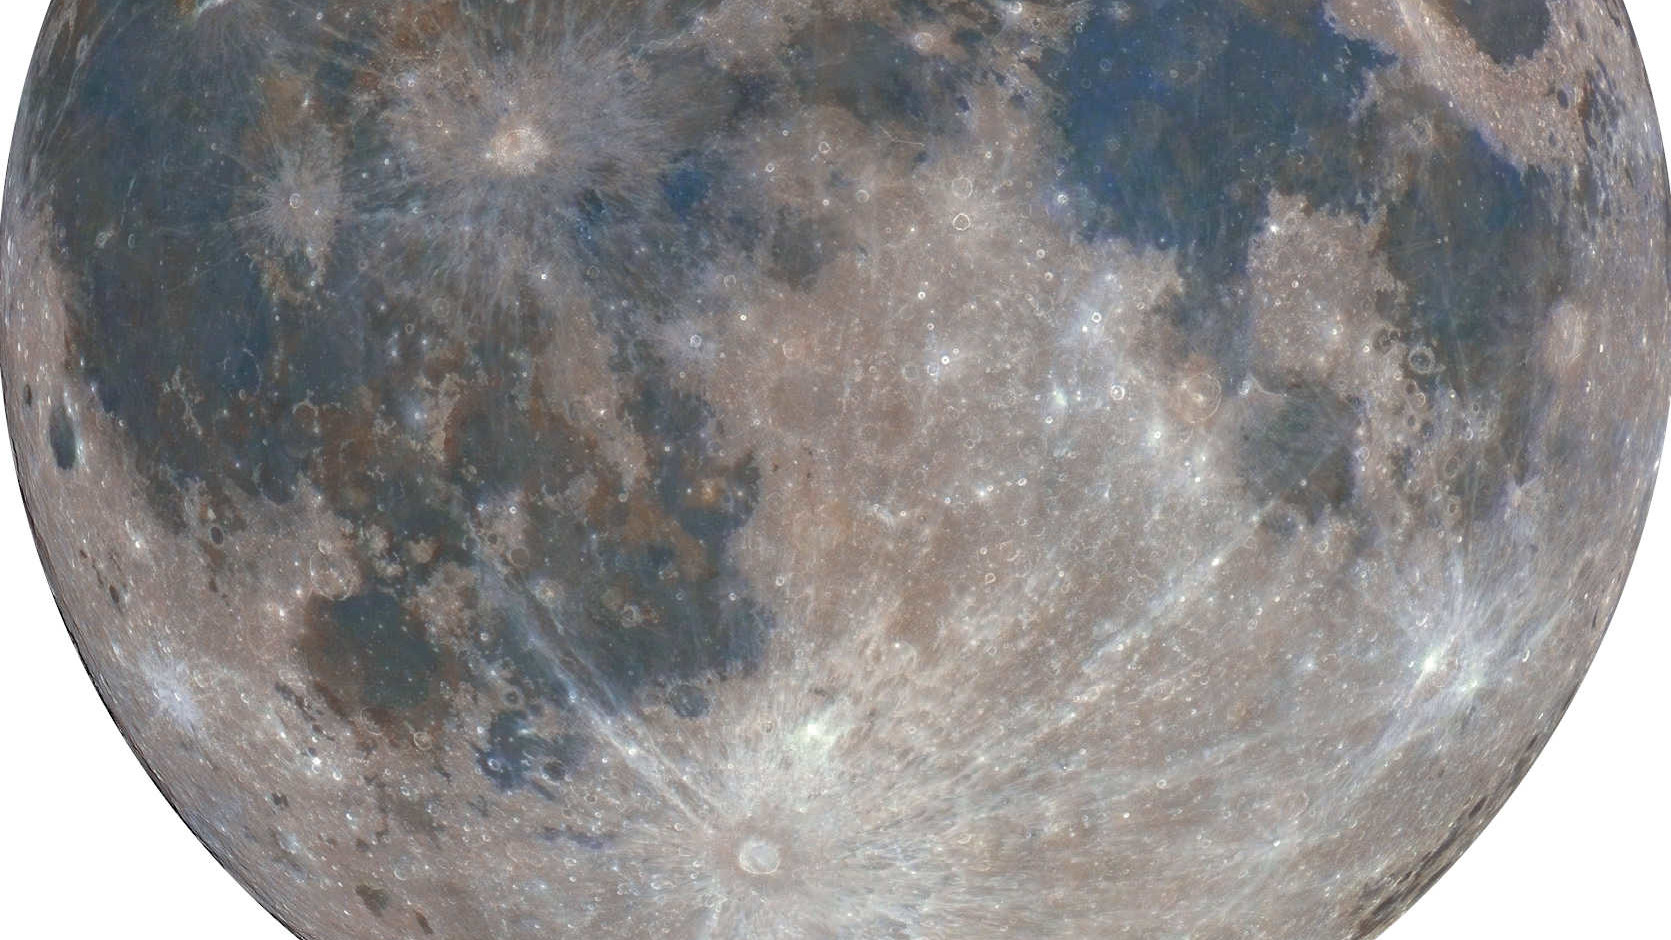 Tycho se encuentra al sur de la Luna y Reiner Gamma, cerca del borde occidental de nuestro satélite. Mario Weigand